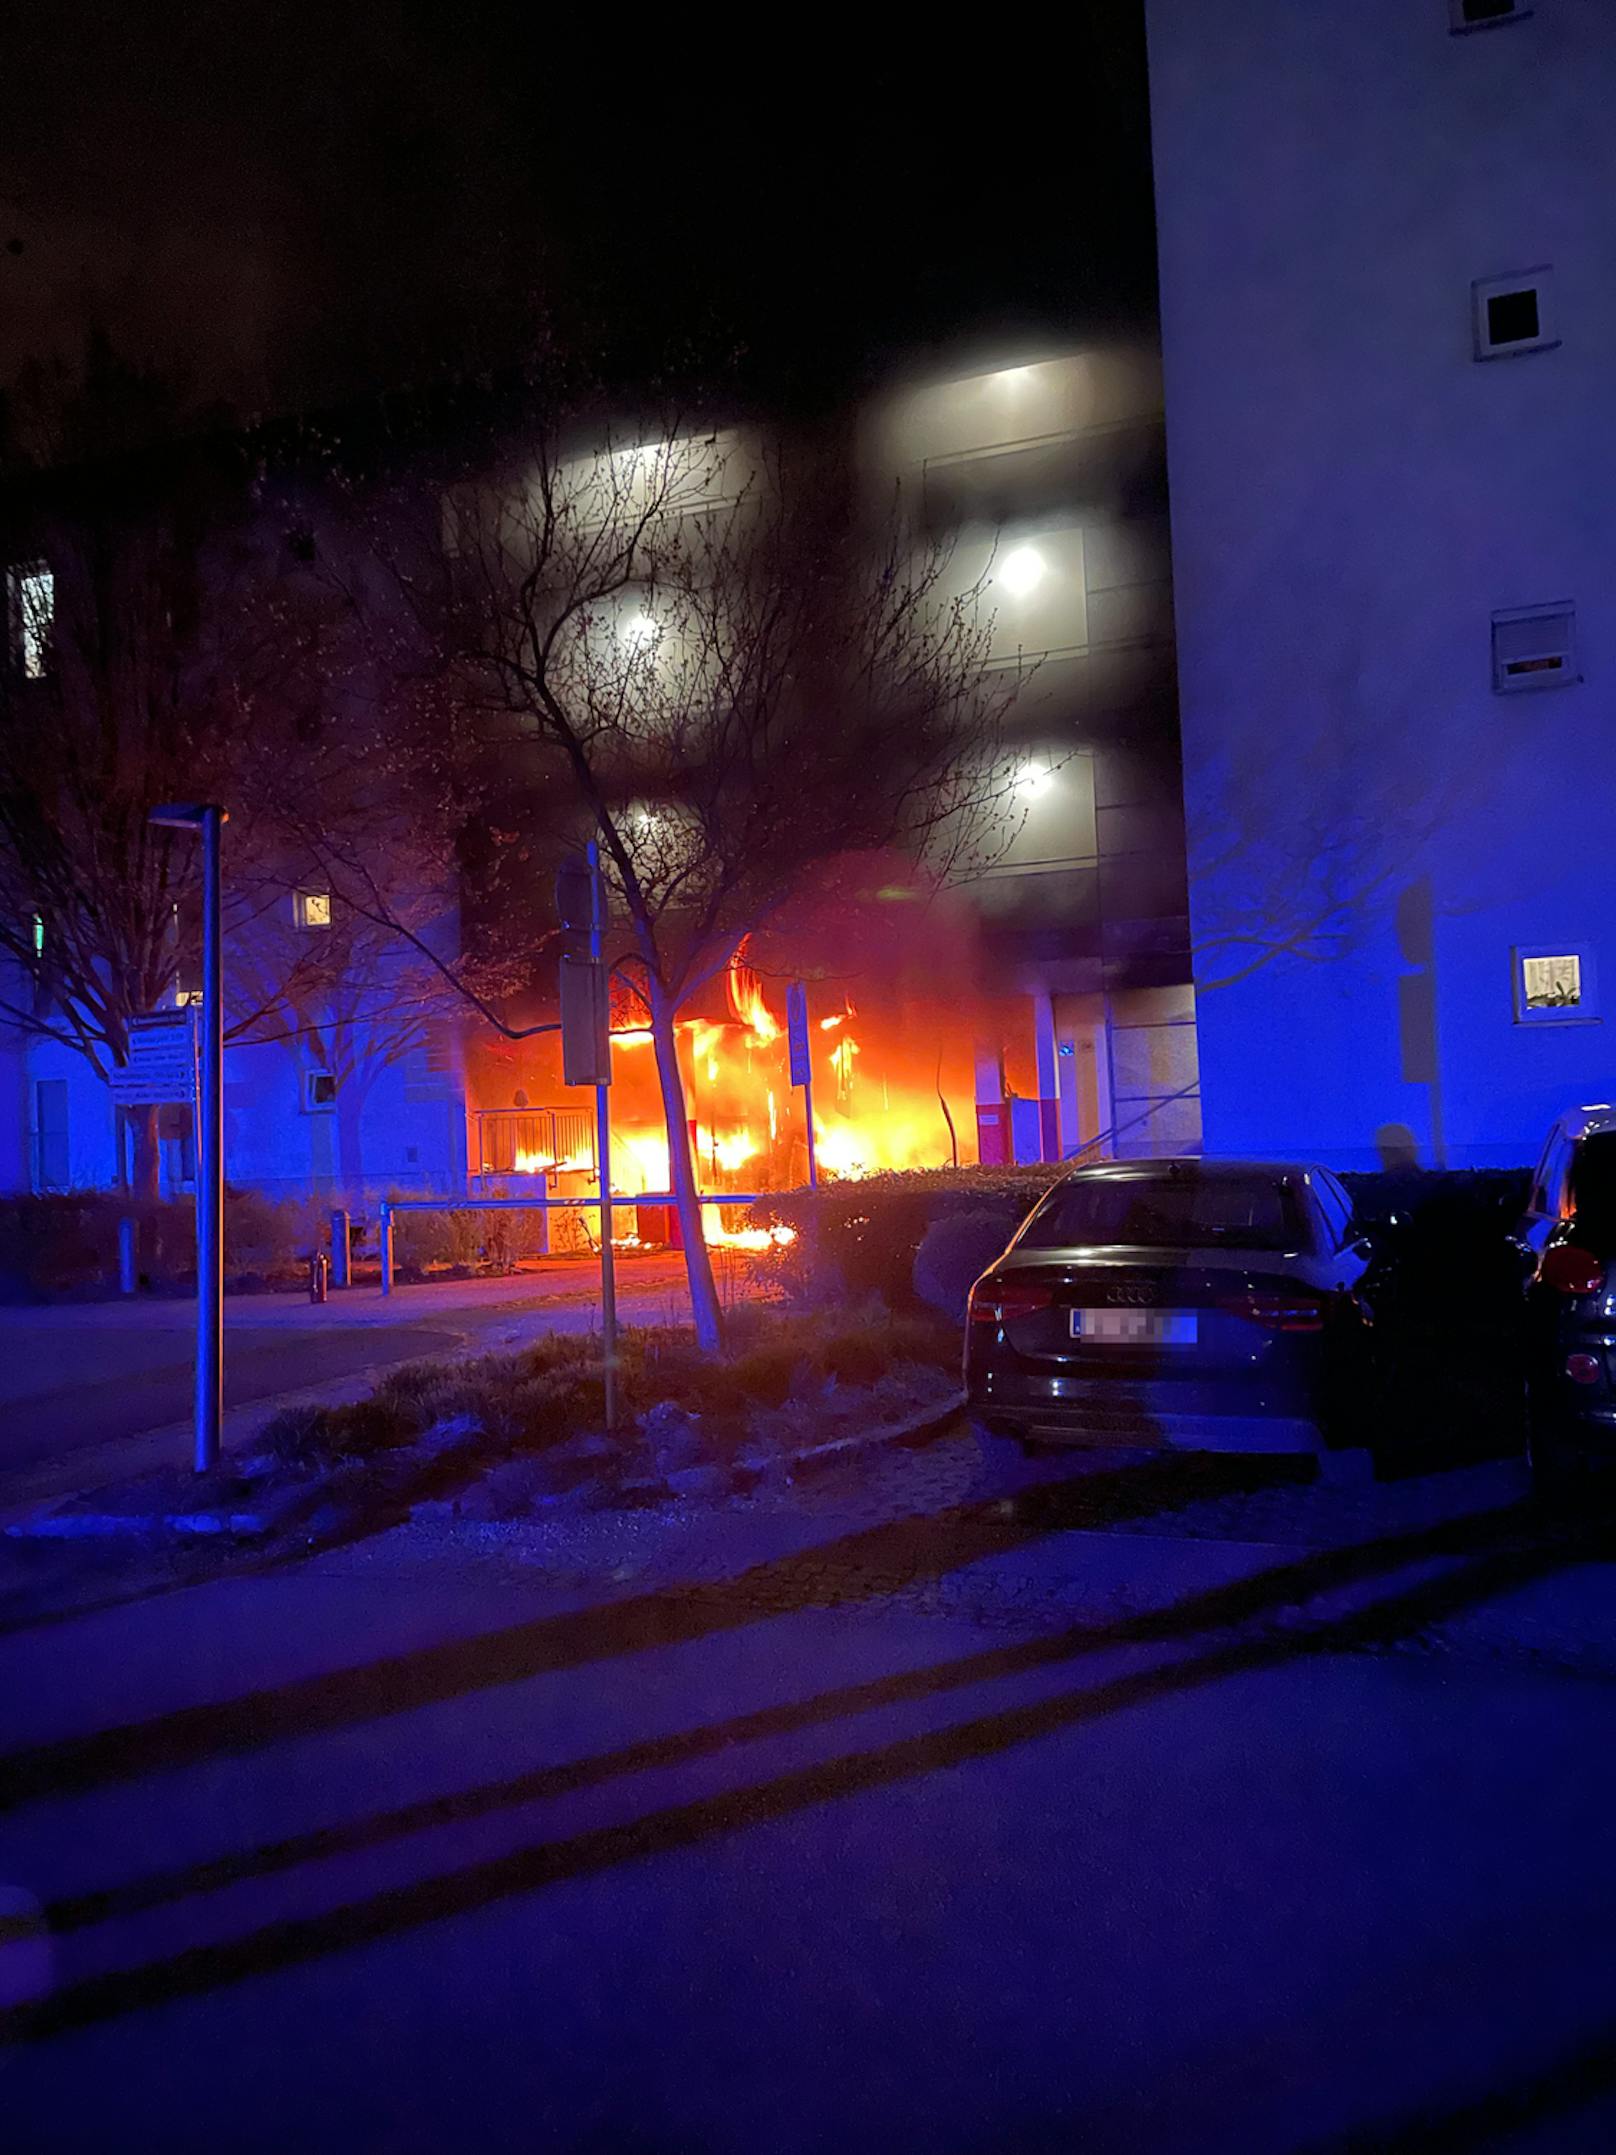 Die Berufsfeuerwehr Linz und die Freiwillige Feuerwehr Ebelsberg wurden am Montag zu einem Brand auf zwei Müllinseln im Bereich Linz-Auwiesen gerufen.